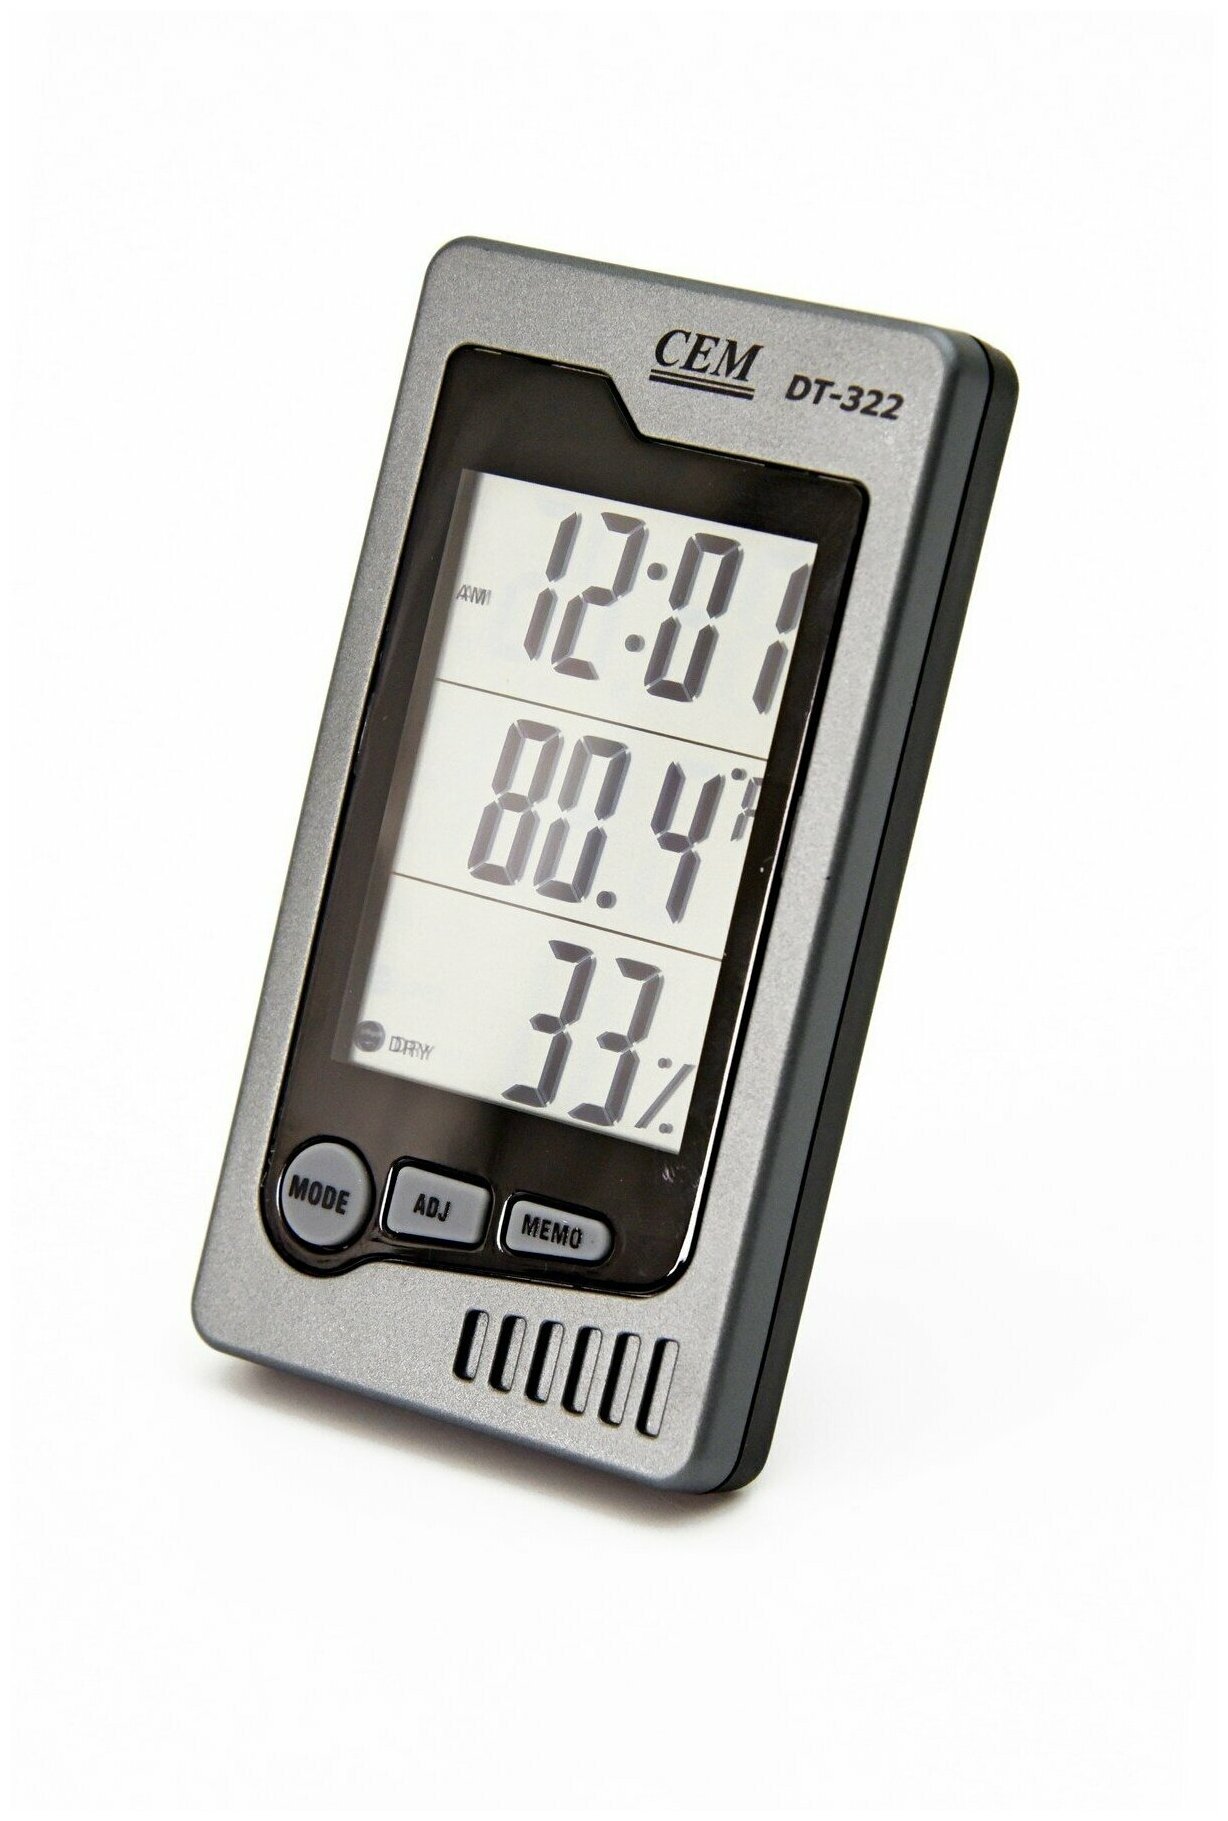 Часы, Измеритель температуры и влажности DT-322 CEM-Instruments автономный. Датчик комфортного состояния температуры и влажности. - фотография № 1